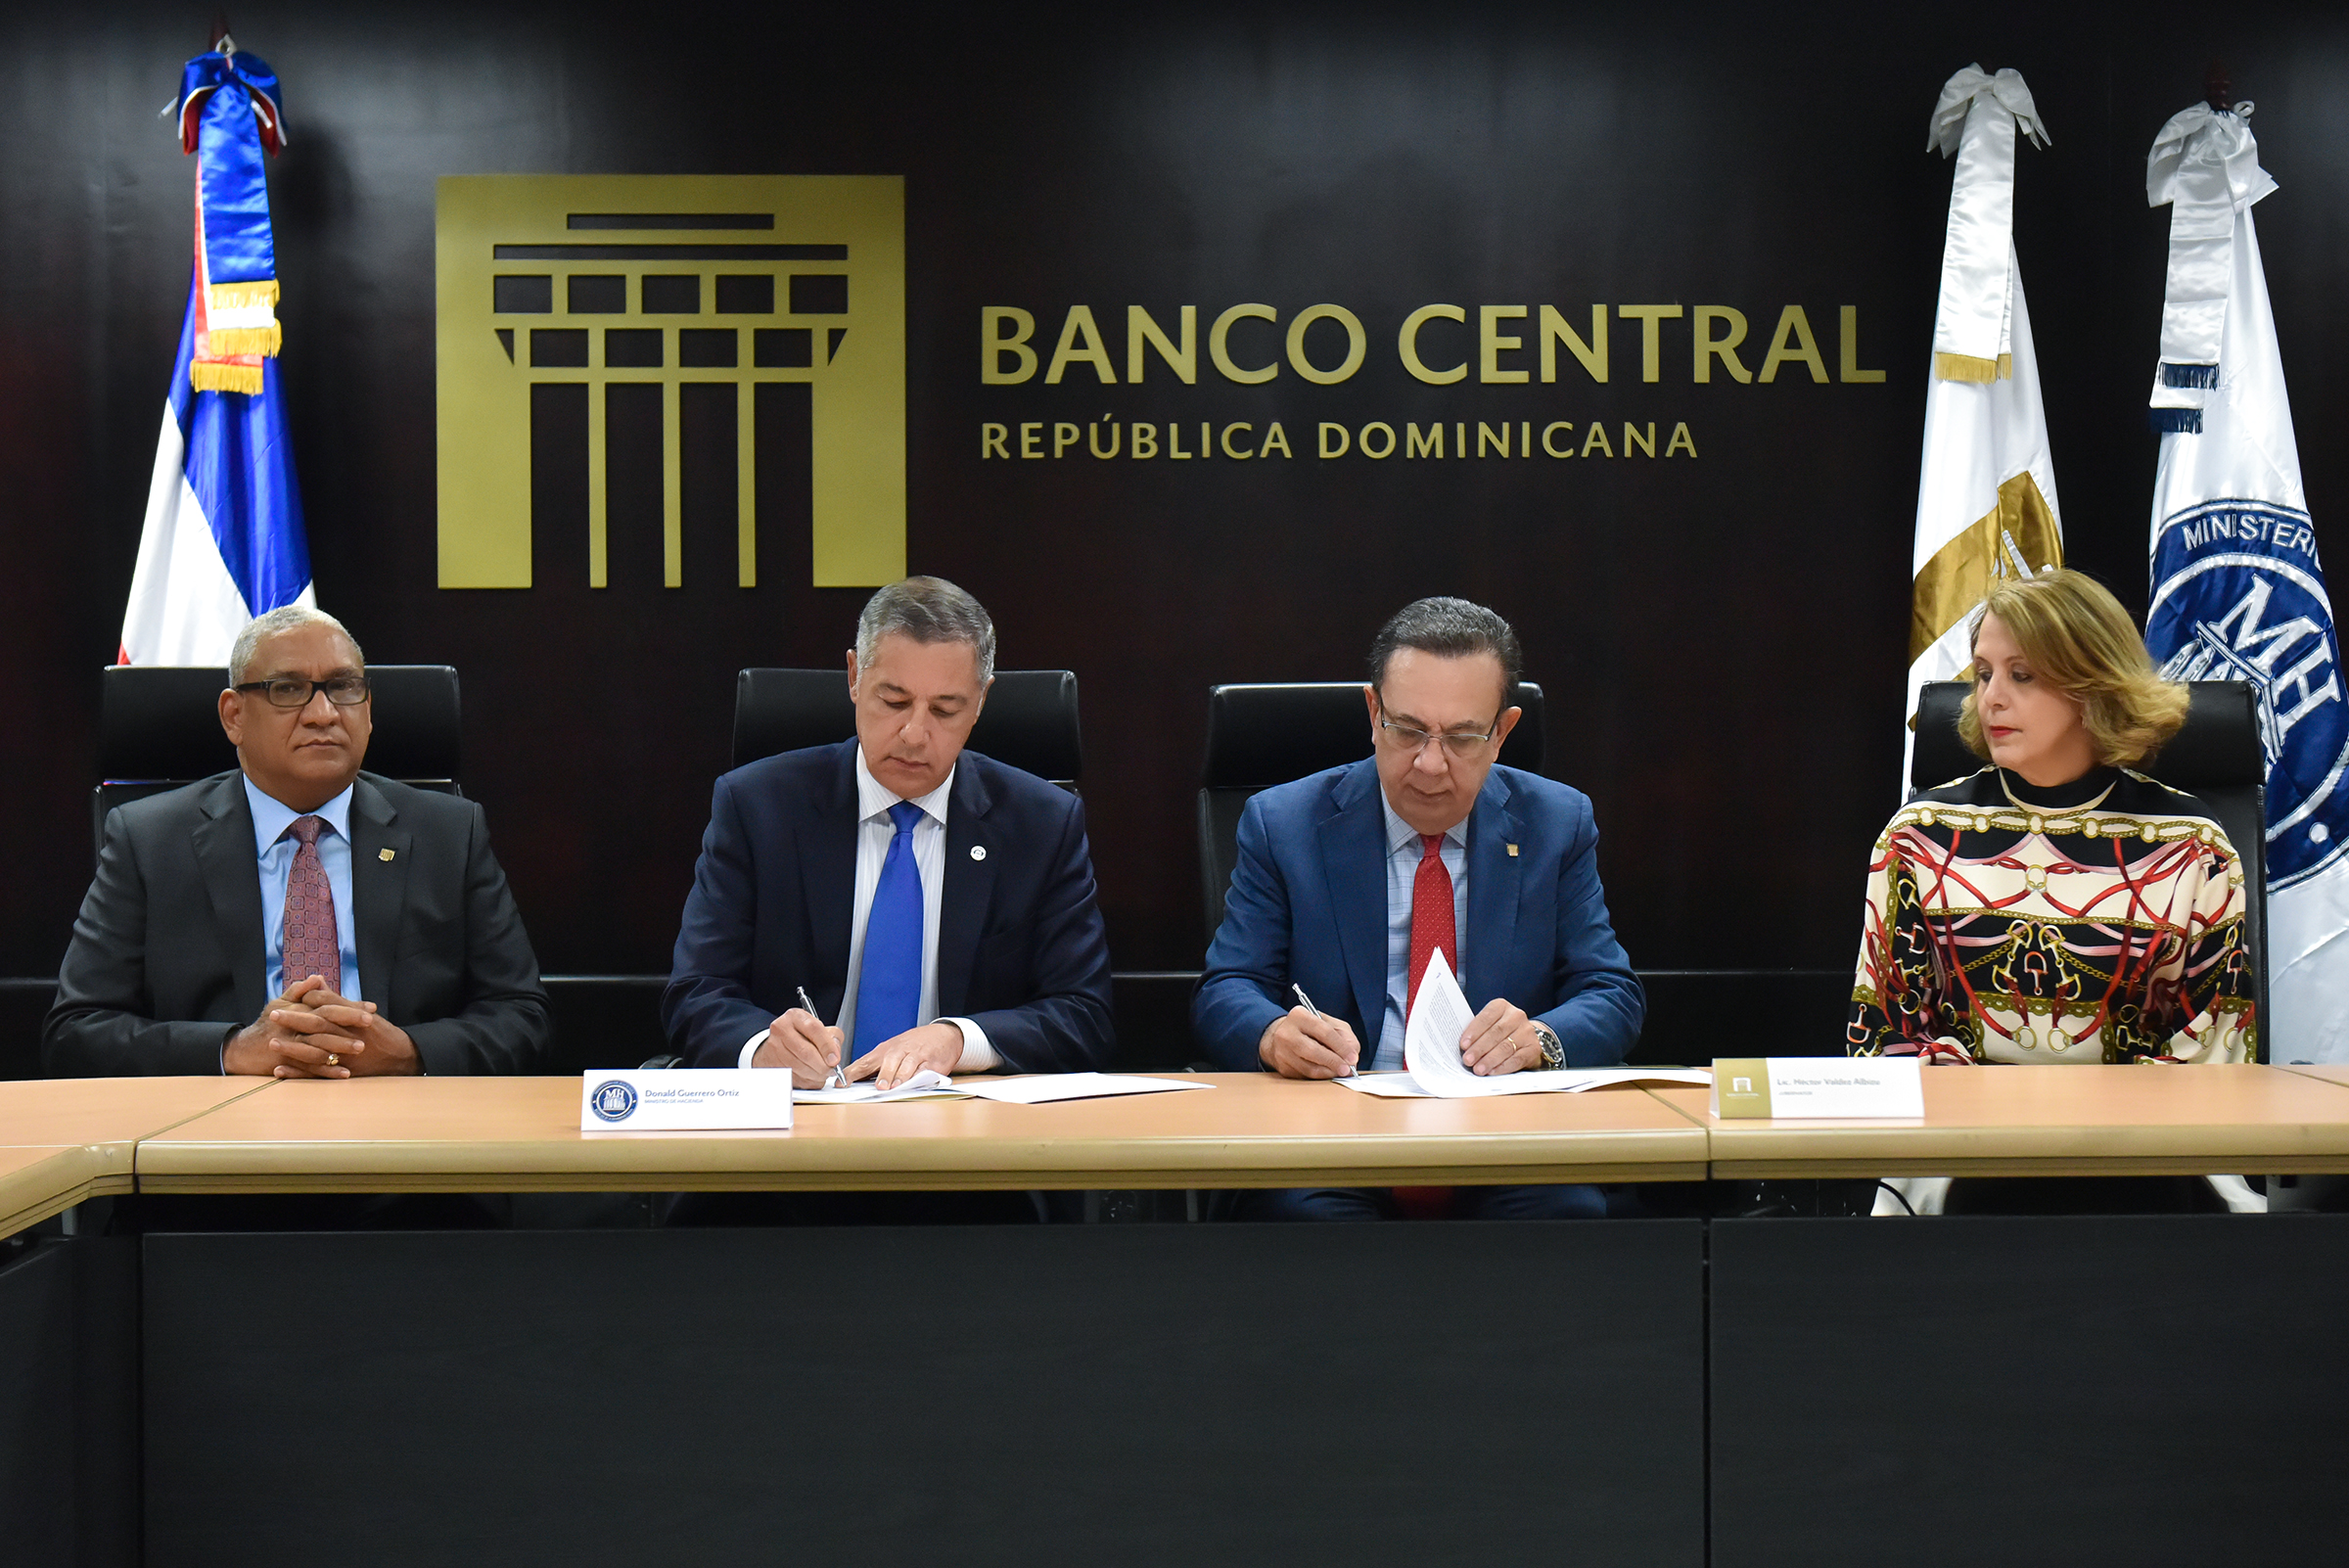 Banco Central y Ministerio de Hacienda acuerdan memorando de entendimiento para nueva Ley de Recapitalización